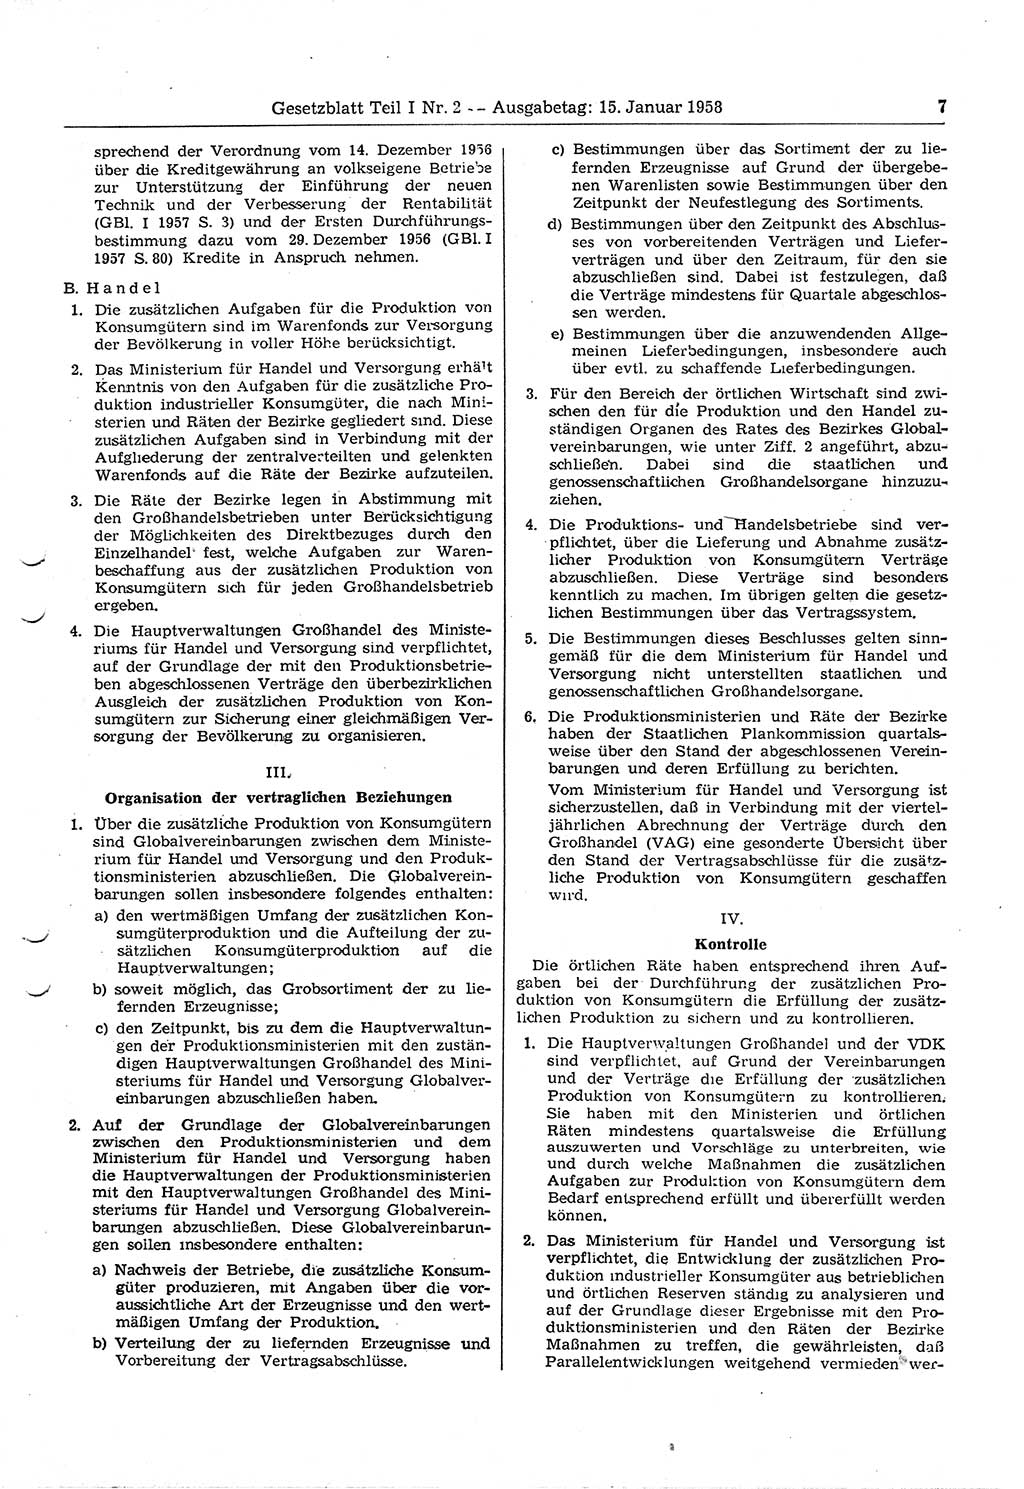 Gesetzblatt (GBl.) der Deutschen Demokratischen Republik (DDR) Teil Ⅰ 1958, Seite 7 (GBl. DDR Ⅰ 1958, S. 7)